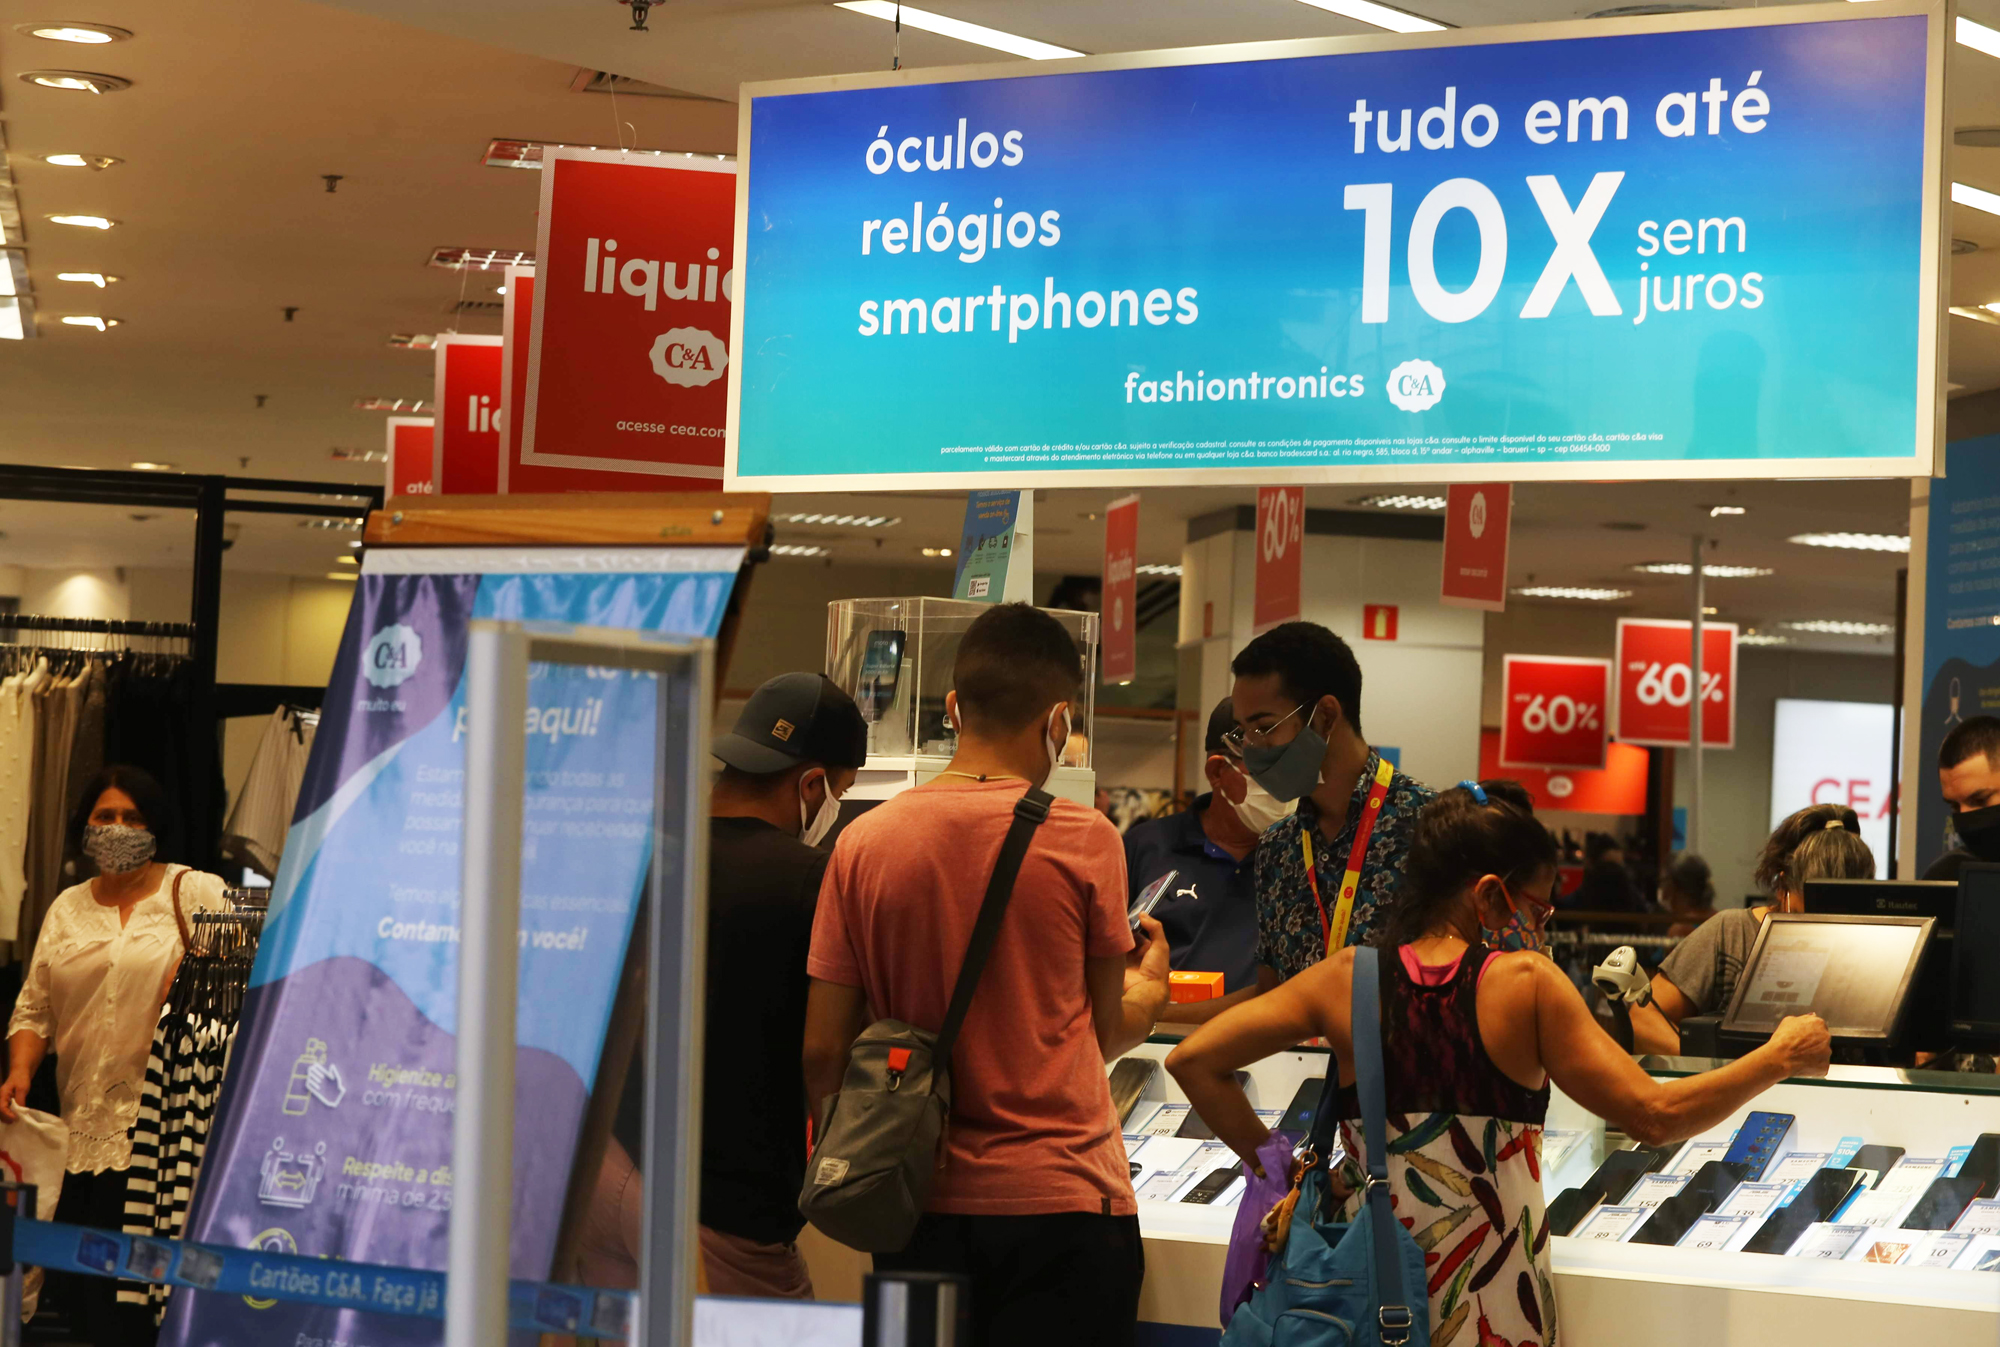 42% dos brasileiros preferem a experiência da loja física à digital